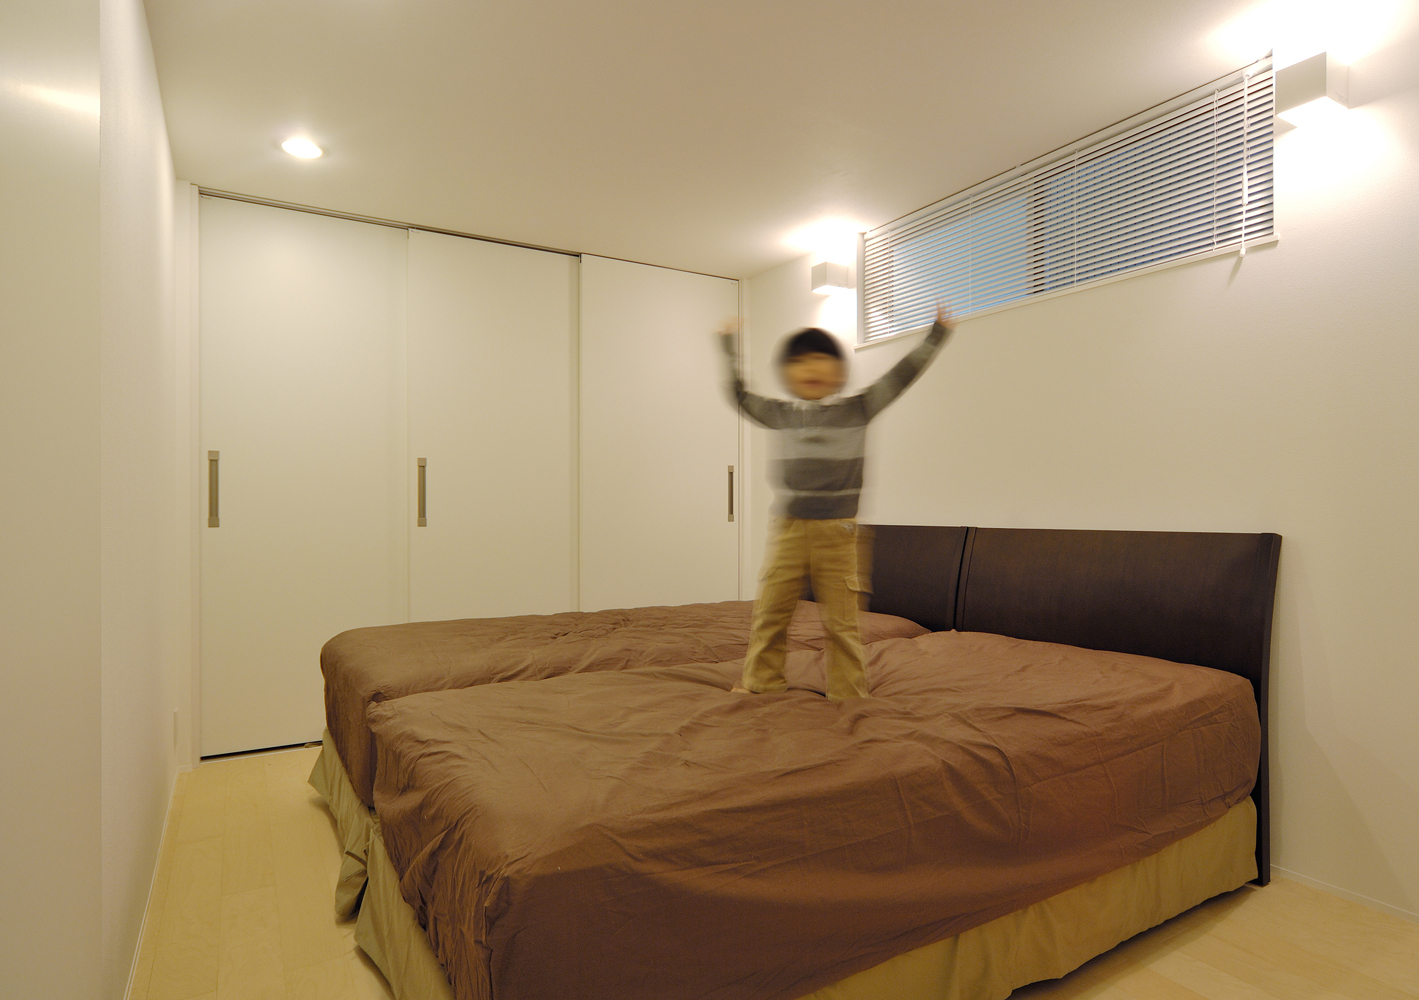 寝ることに集中できるように シンプルに設計された主寝室 Fevecasa フェブカーサ